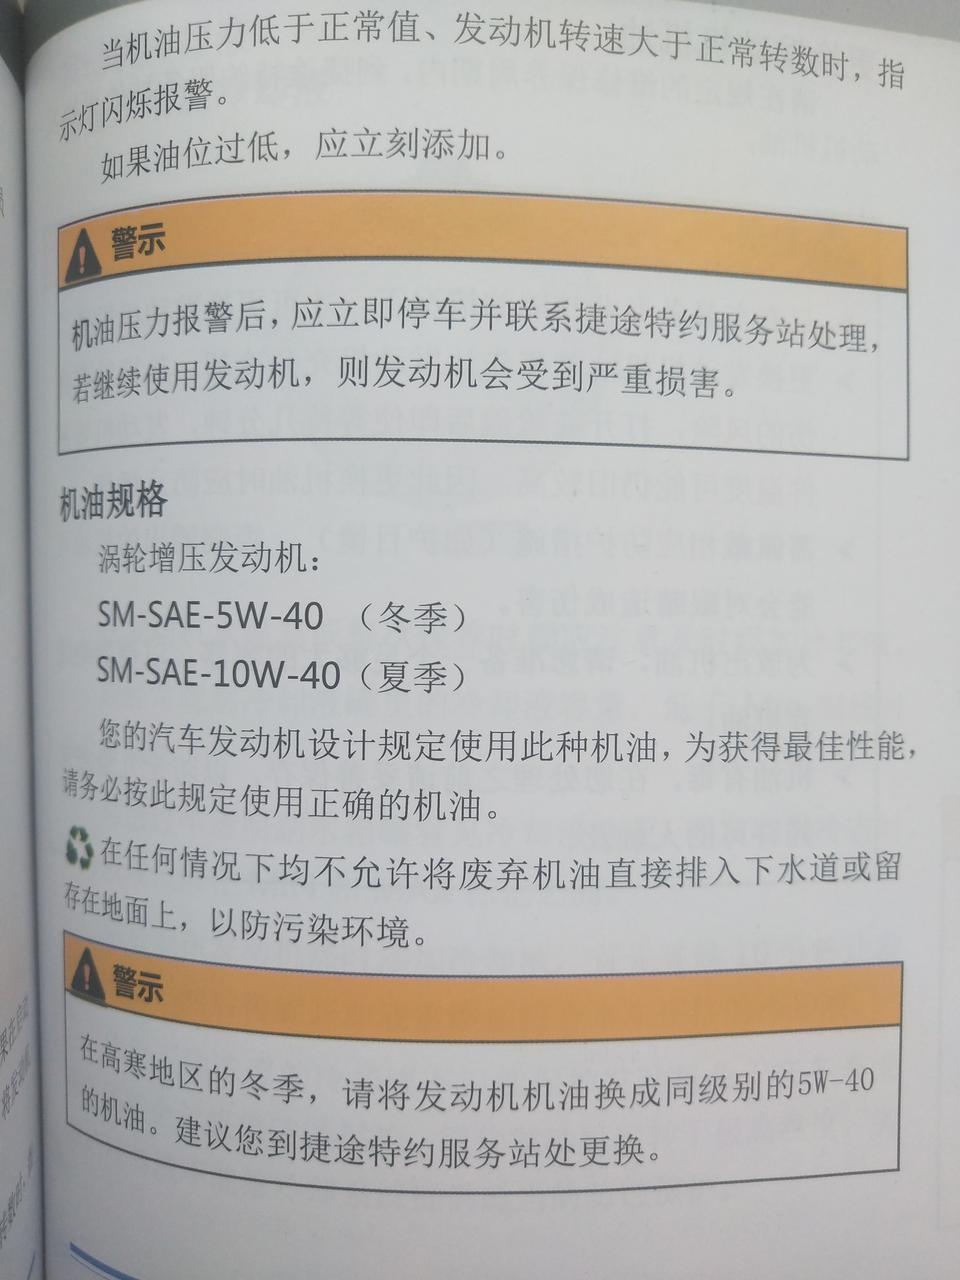 捷途x70捷途70说明书上规定所使用的机油标号SM SAE-5W-40    SM是机油的级别是吗  ？ 如果自己换可以换 SN-SAE-5W-40的机油吗？  对发动机有影响吗